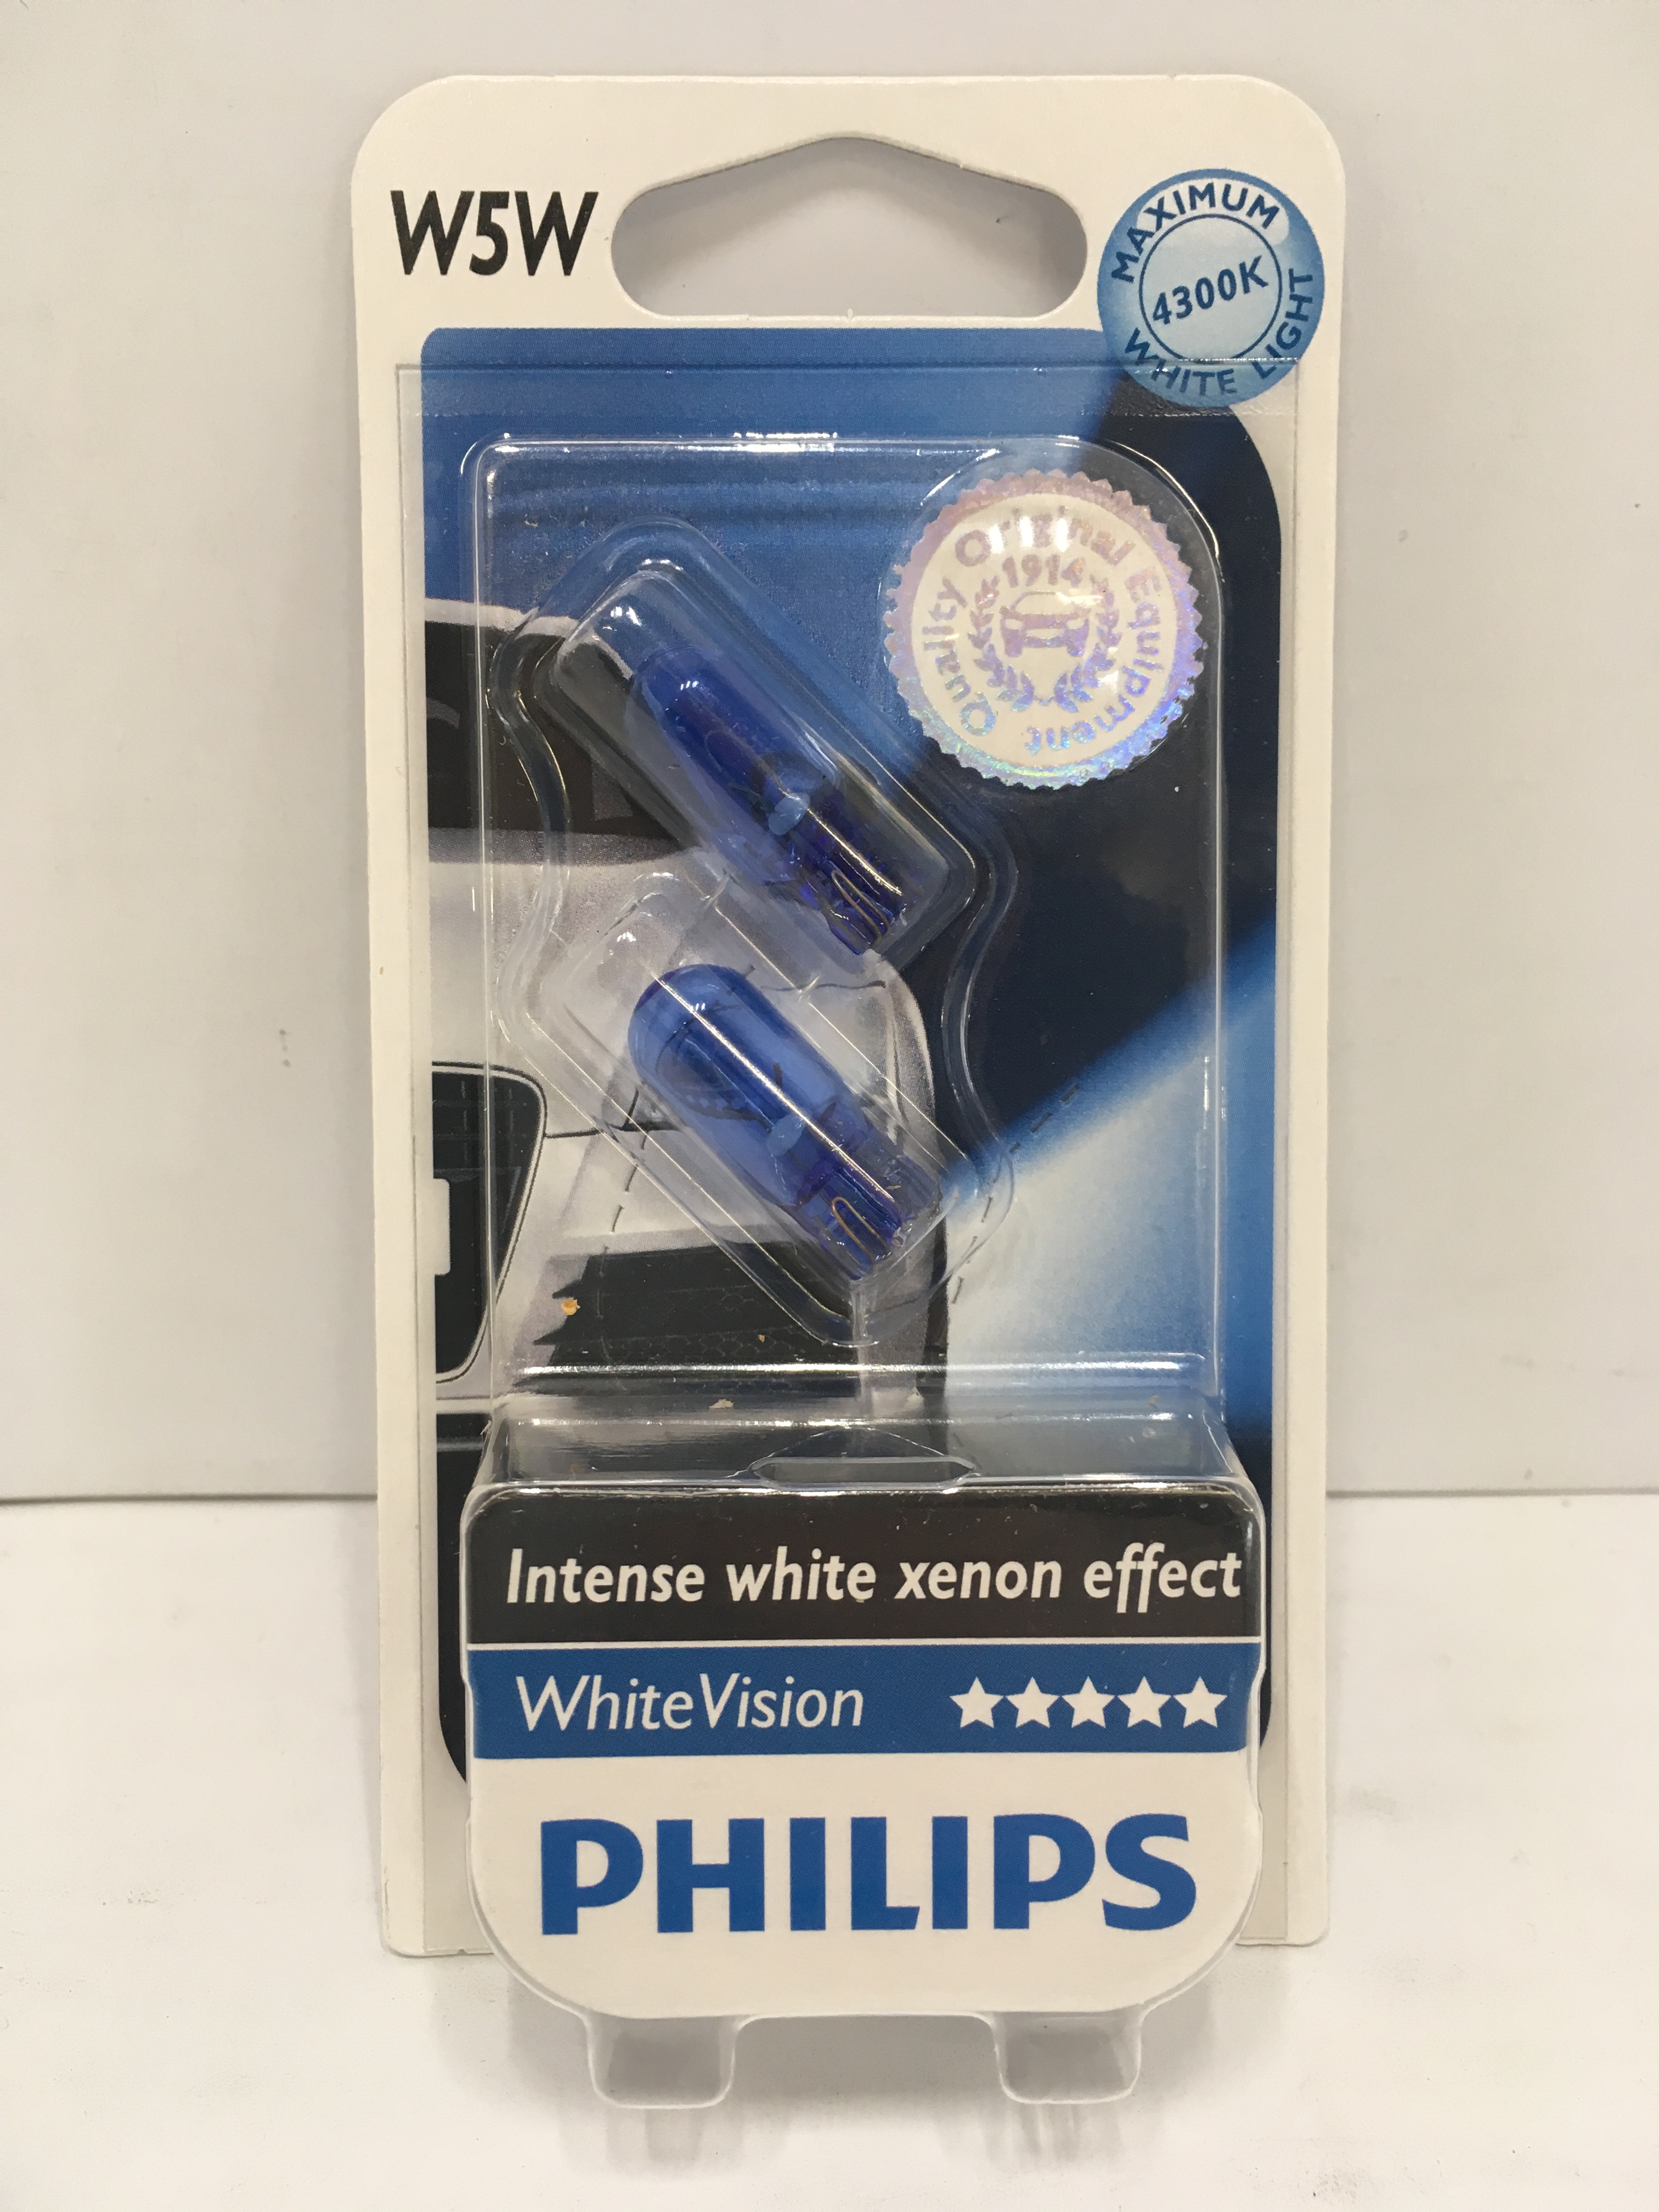 PHILIPS Standlicht Glühbirne W5W 12V 5W intence white xenon effect White  Vision 4300K kaufen - PM-Autoteile - Onlineshop